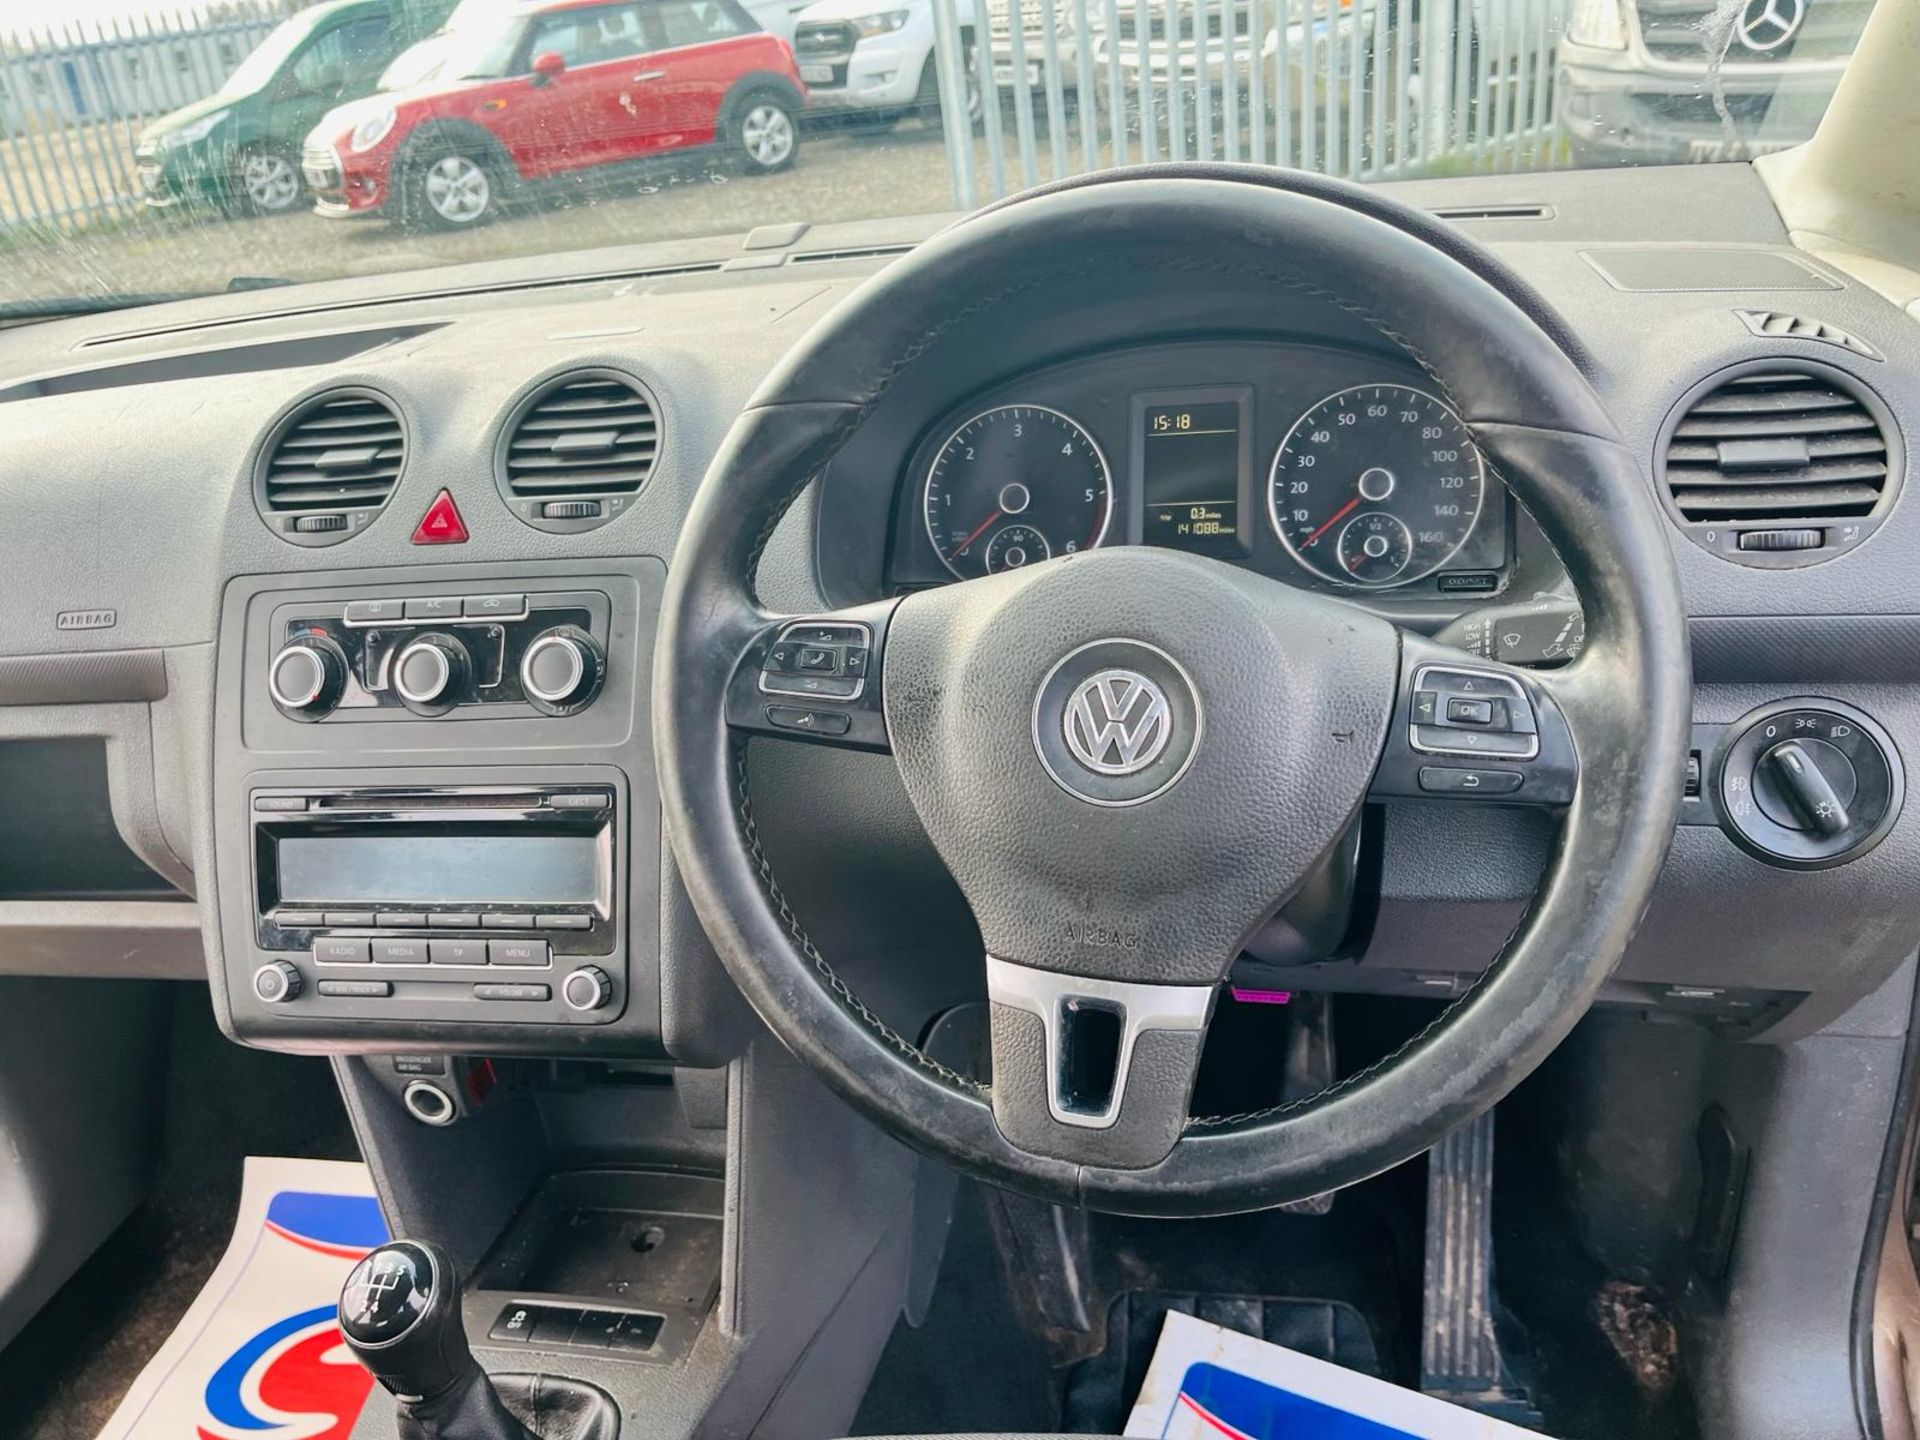 Volkswagen Caddy Maxi C20 1.6 Tdi 120 MDV 2014 '14 Reg' -A/C -Alloy Wheels -No Vat - Image 24 of 33